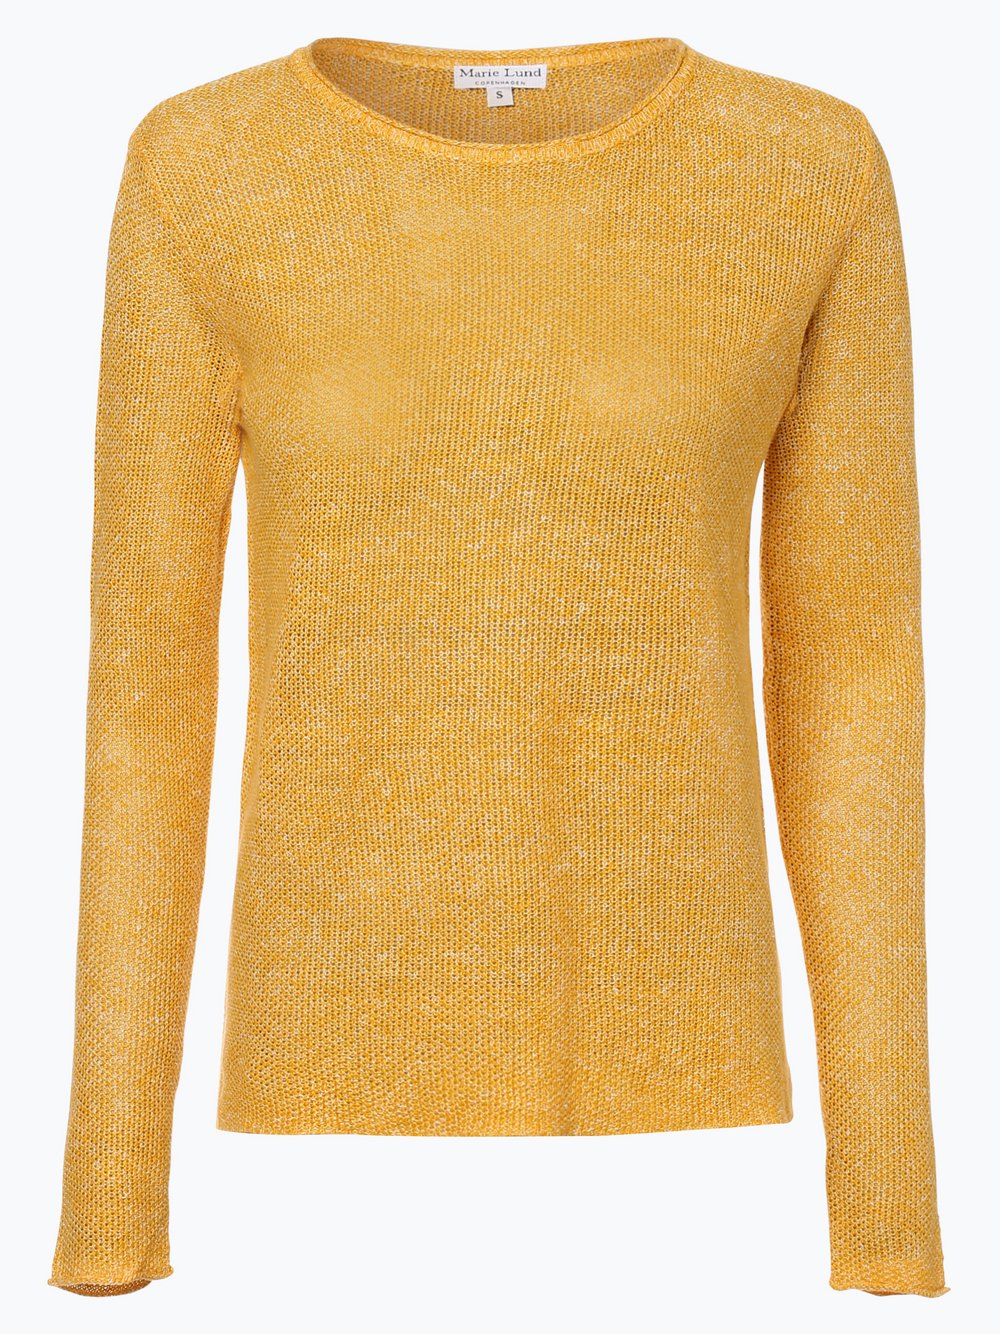 Marie Lund - Damski sweter lniany, żółty